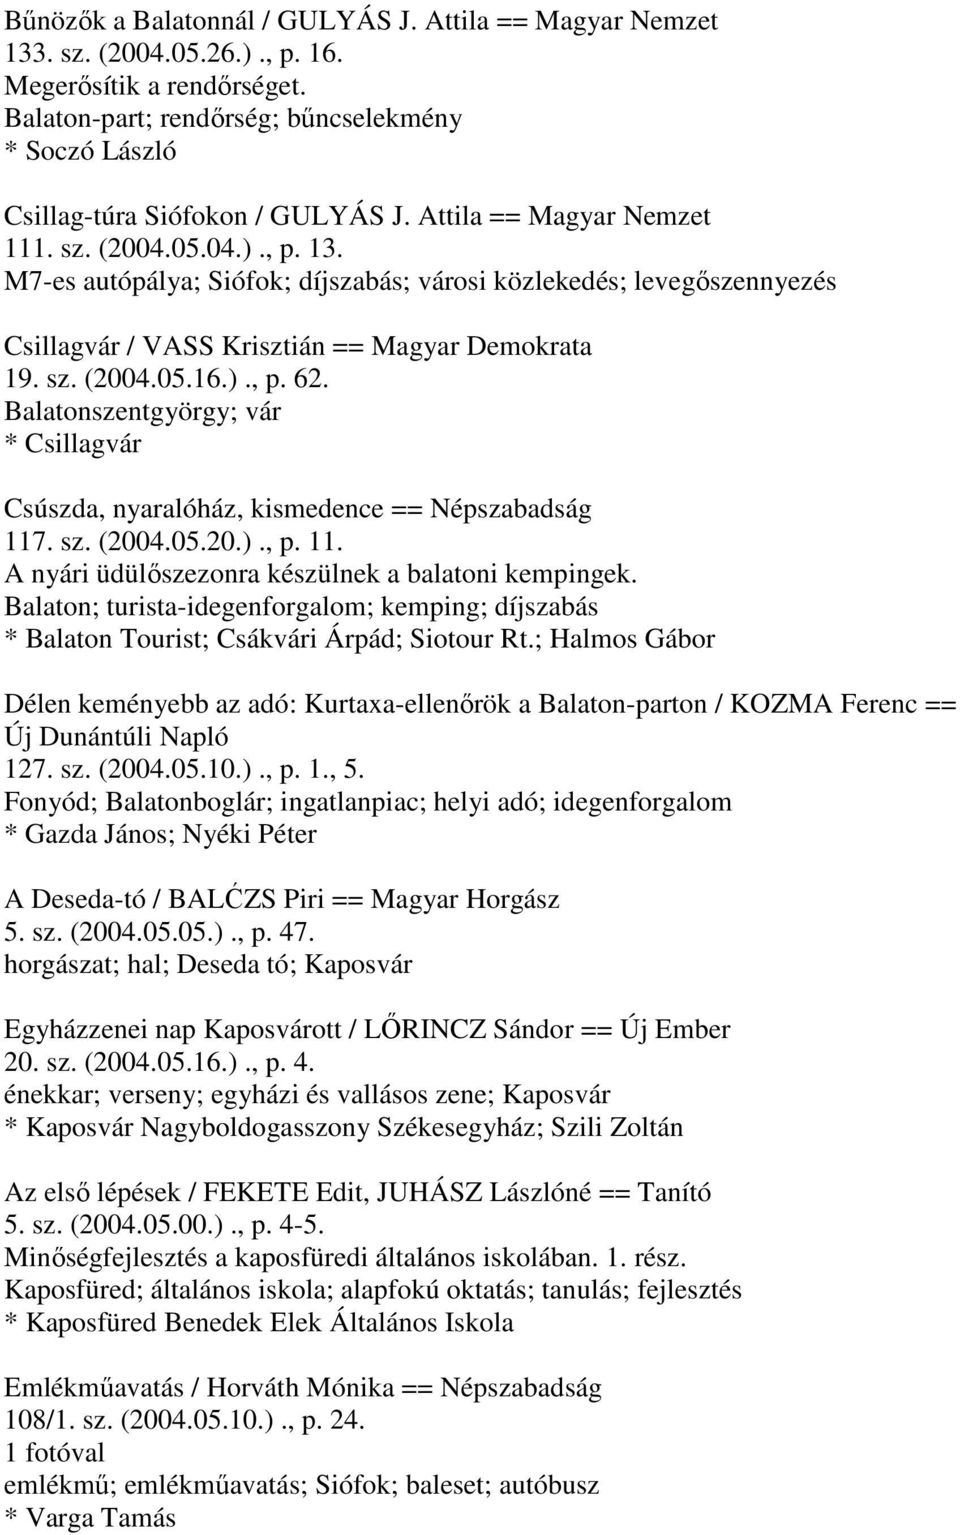 M7-es autópálya; Siófok; díjszabás; városi közlekedés; levegőszennyezés Csillagvár / VASS Krisztián == Magyar Demokrata 19. sz. (2004.05.16.)., p. 62.